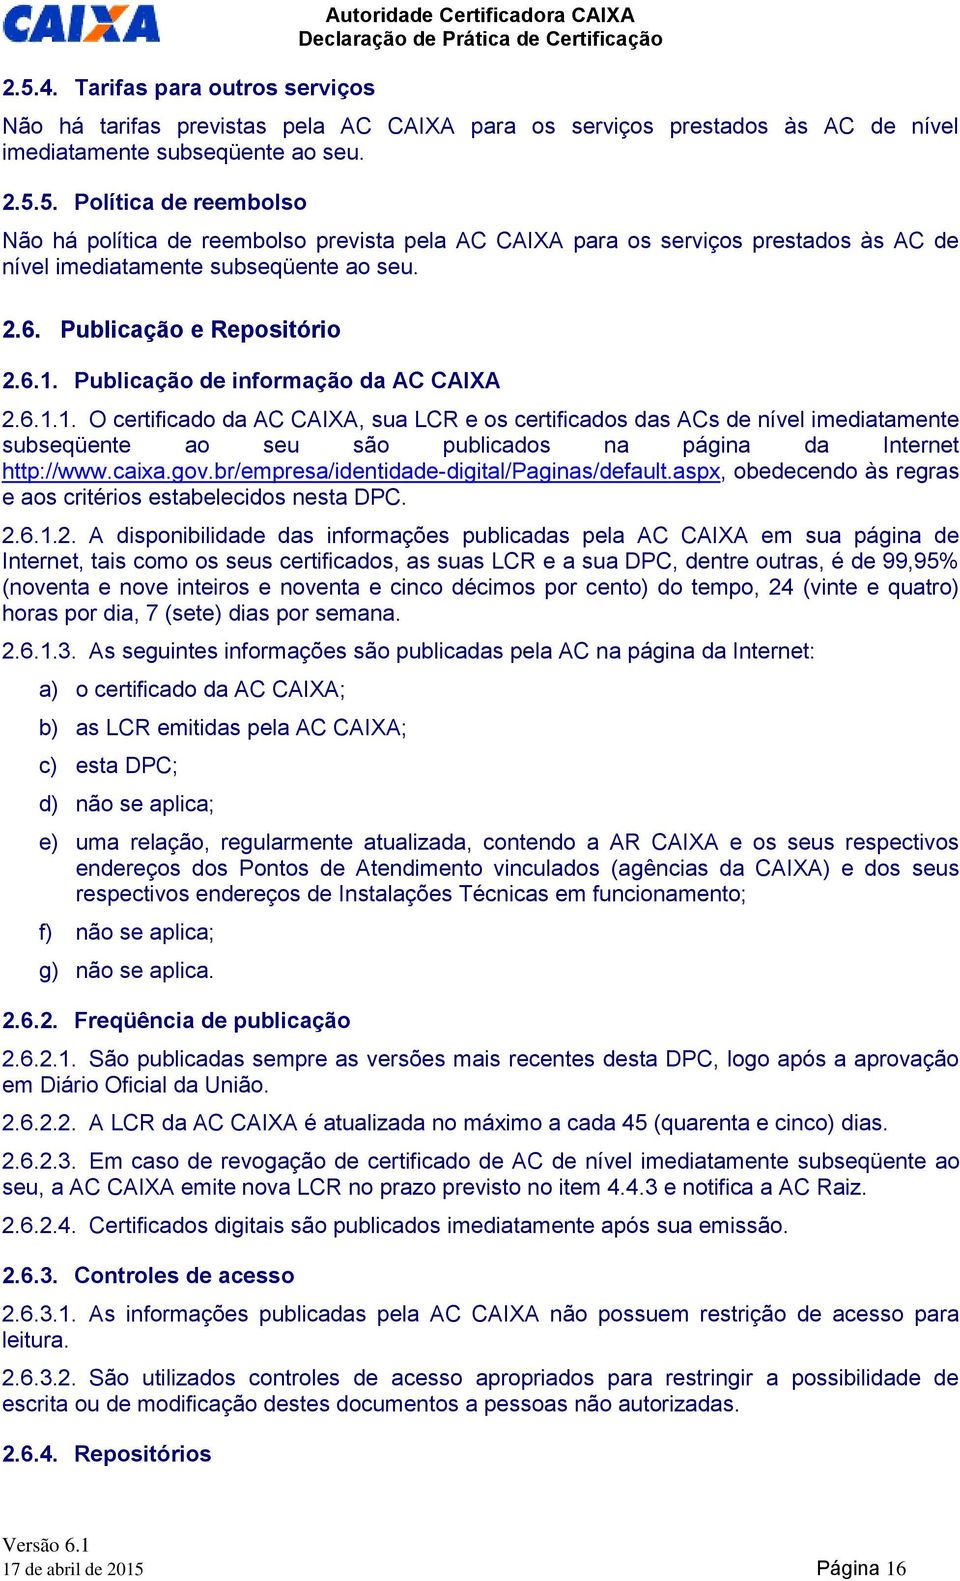 caixa.gov.br/empresa/identidade-digital/paginas/default.aspx, obedecendo às regras e aos critérios estabelecidos nesta DPC. 2.